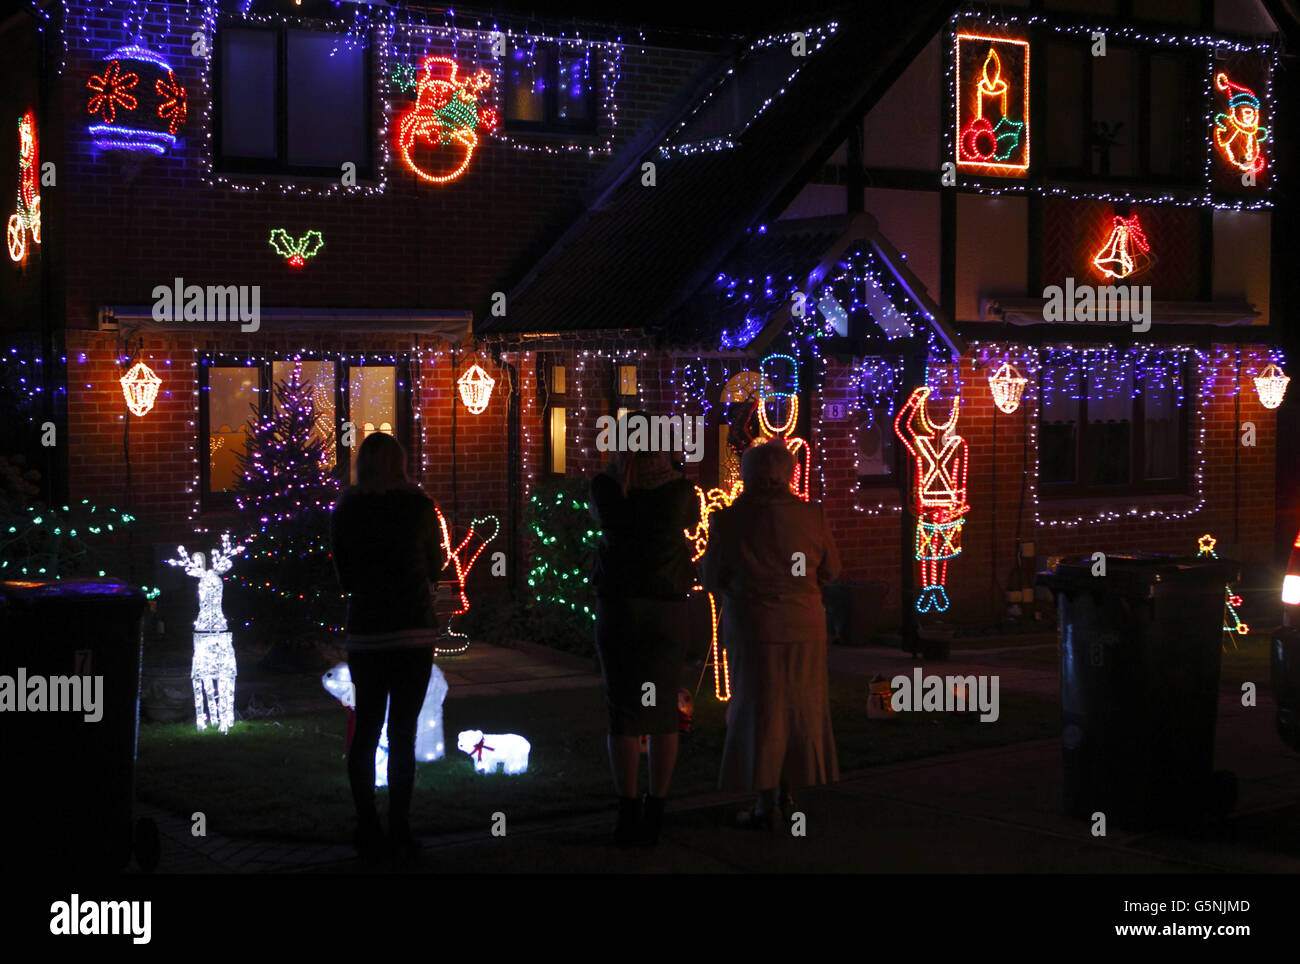 Ein allgemeiner Blick auf die festlichen Lichter, die 12 Häuser in Greyhound Close in Southampton schmücken, wo jedes Anwesen in der Sackgasse einige Lichter draußen hat. In diesem Jahr sammeln sie Geld für die lokale Kinderhilfe Naomi House. Stockfoto